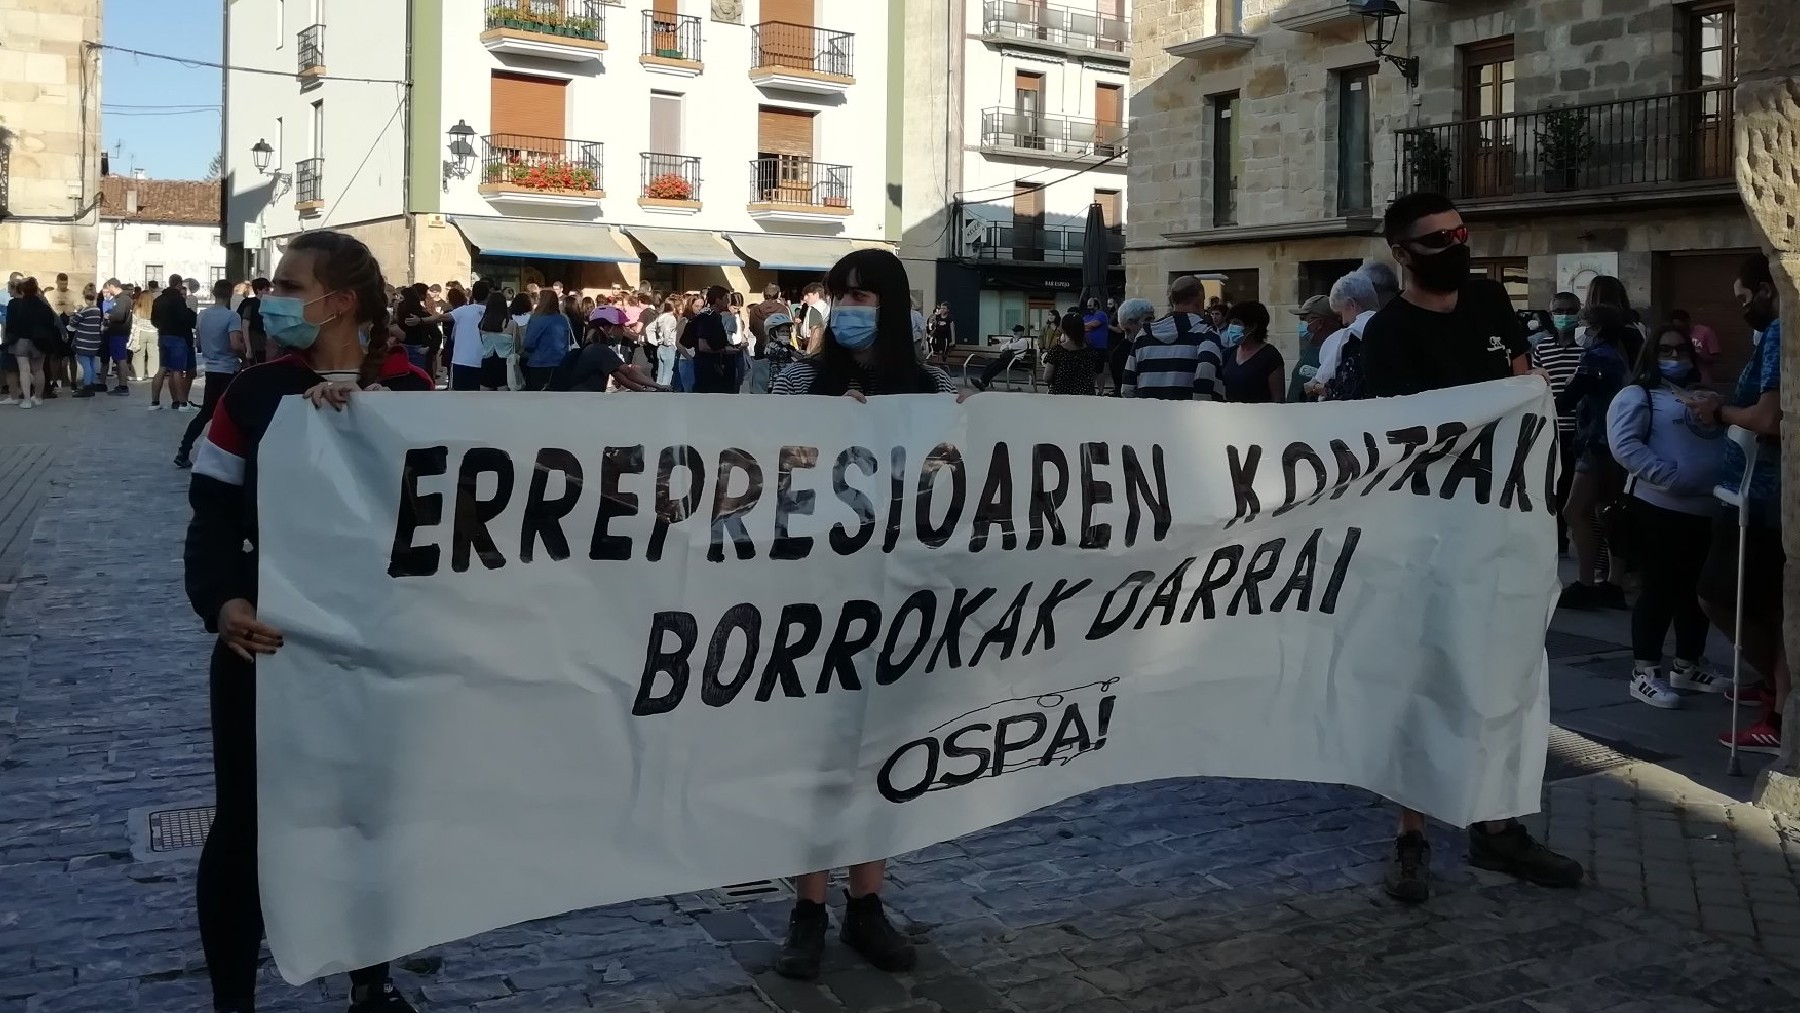 Marcha proetarra en Alsasua (Navarra) a favor de la expulsión de la Guardia Civil. (Foto: @AhotsaInfo vía Twitter)